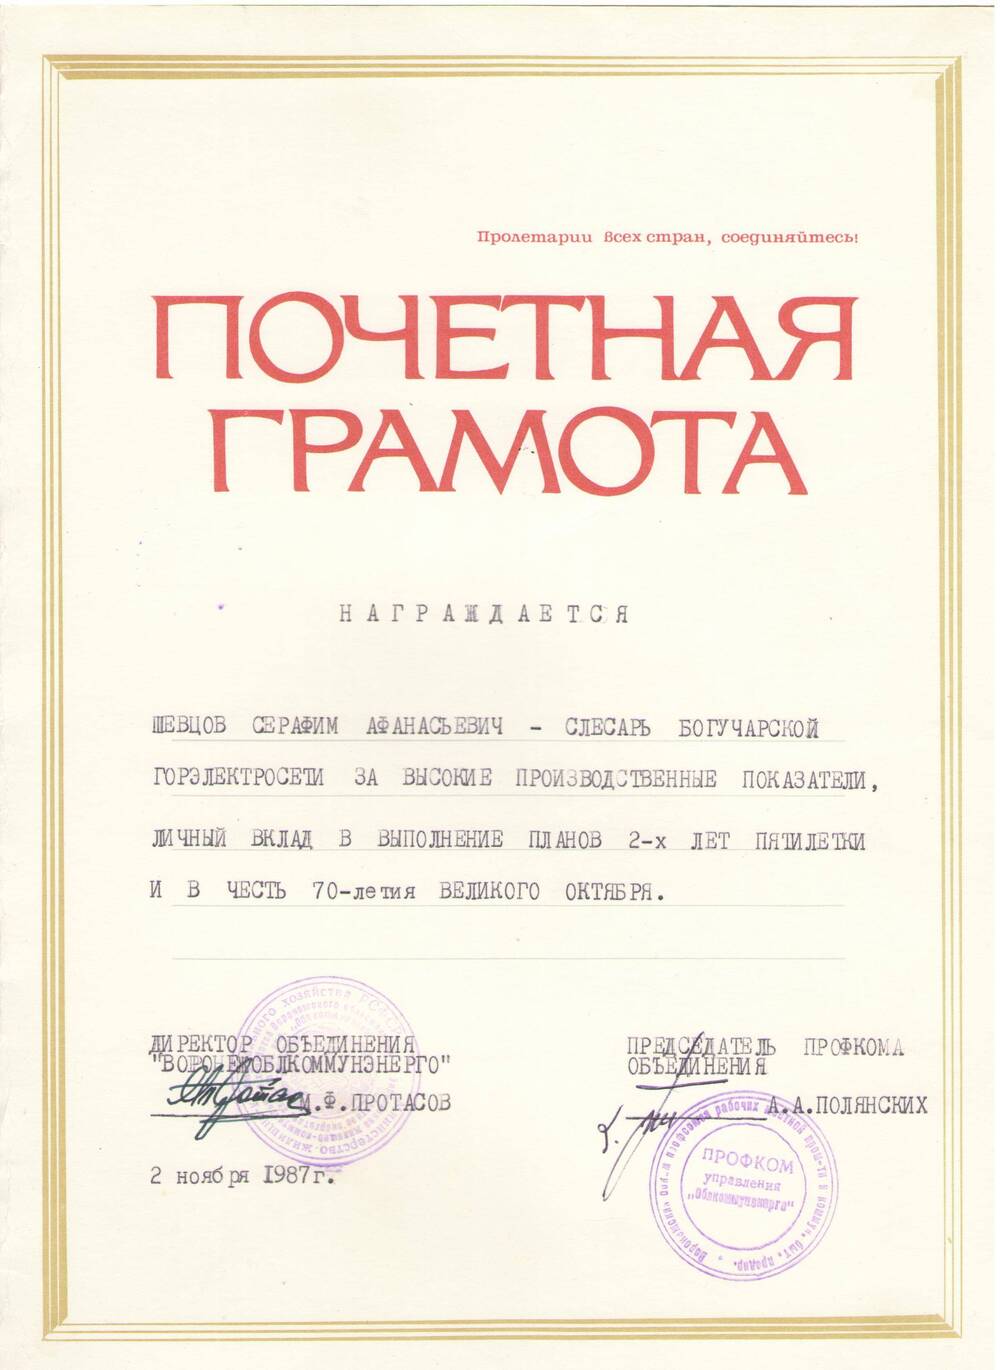 Почетная грамота Шевцову Серафиму Афанасьевичу  в честь 70 летия Великого Октября, 2 ноября 1987 г.